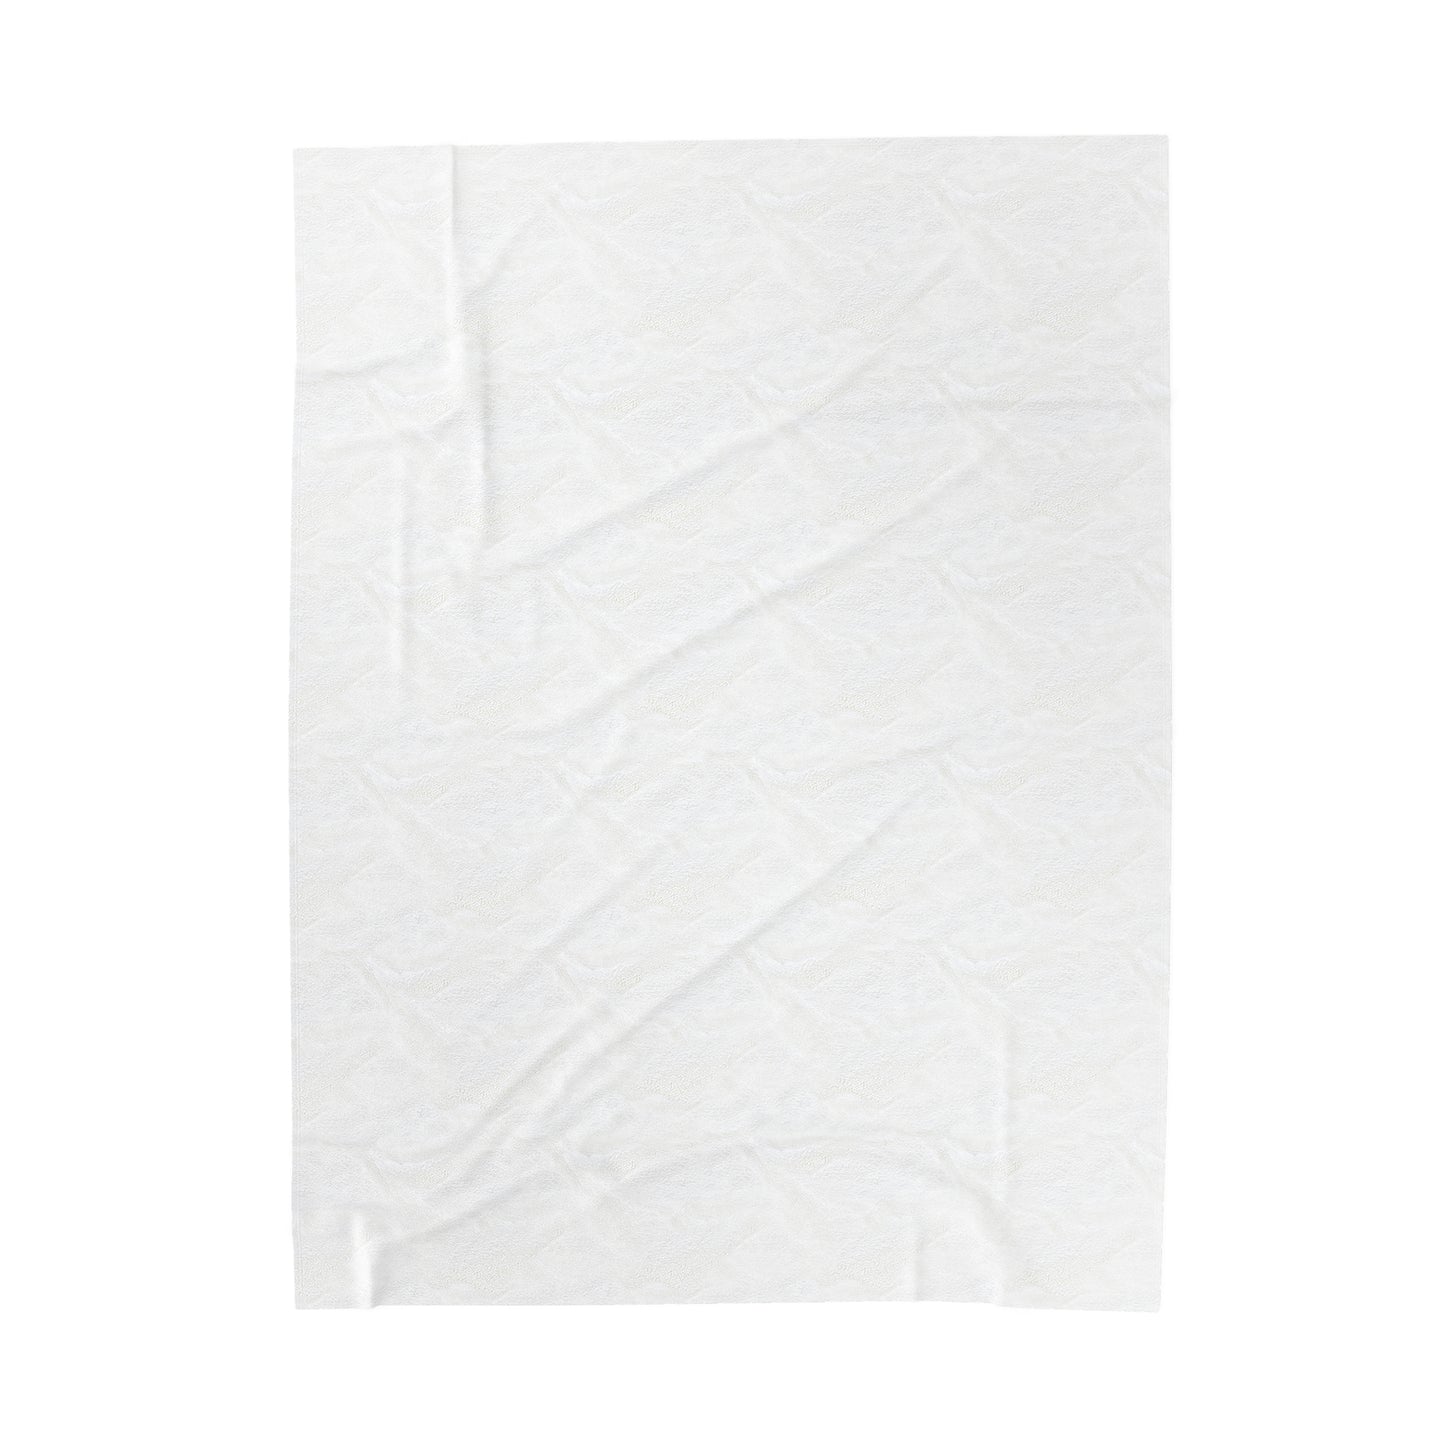 Velveteen Plush Blanket in "Rough Draft"